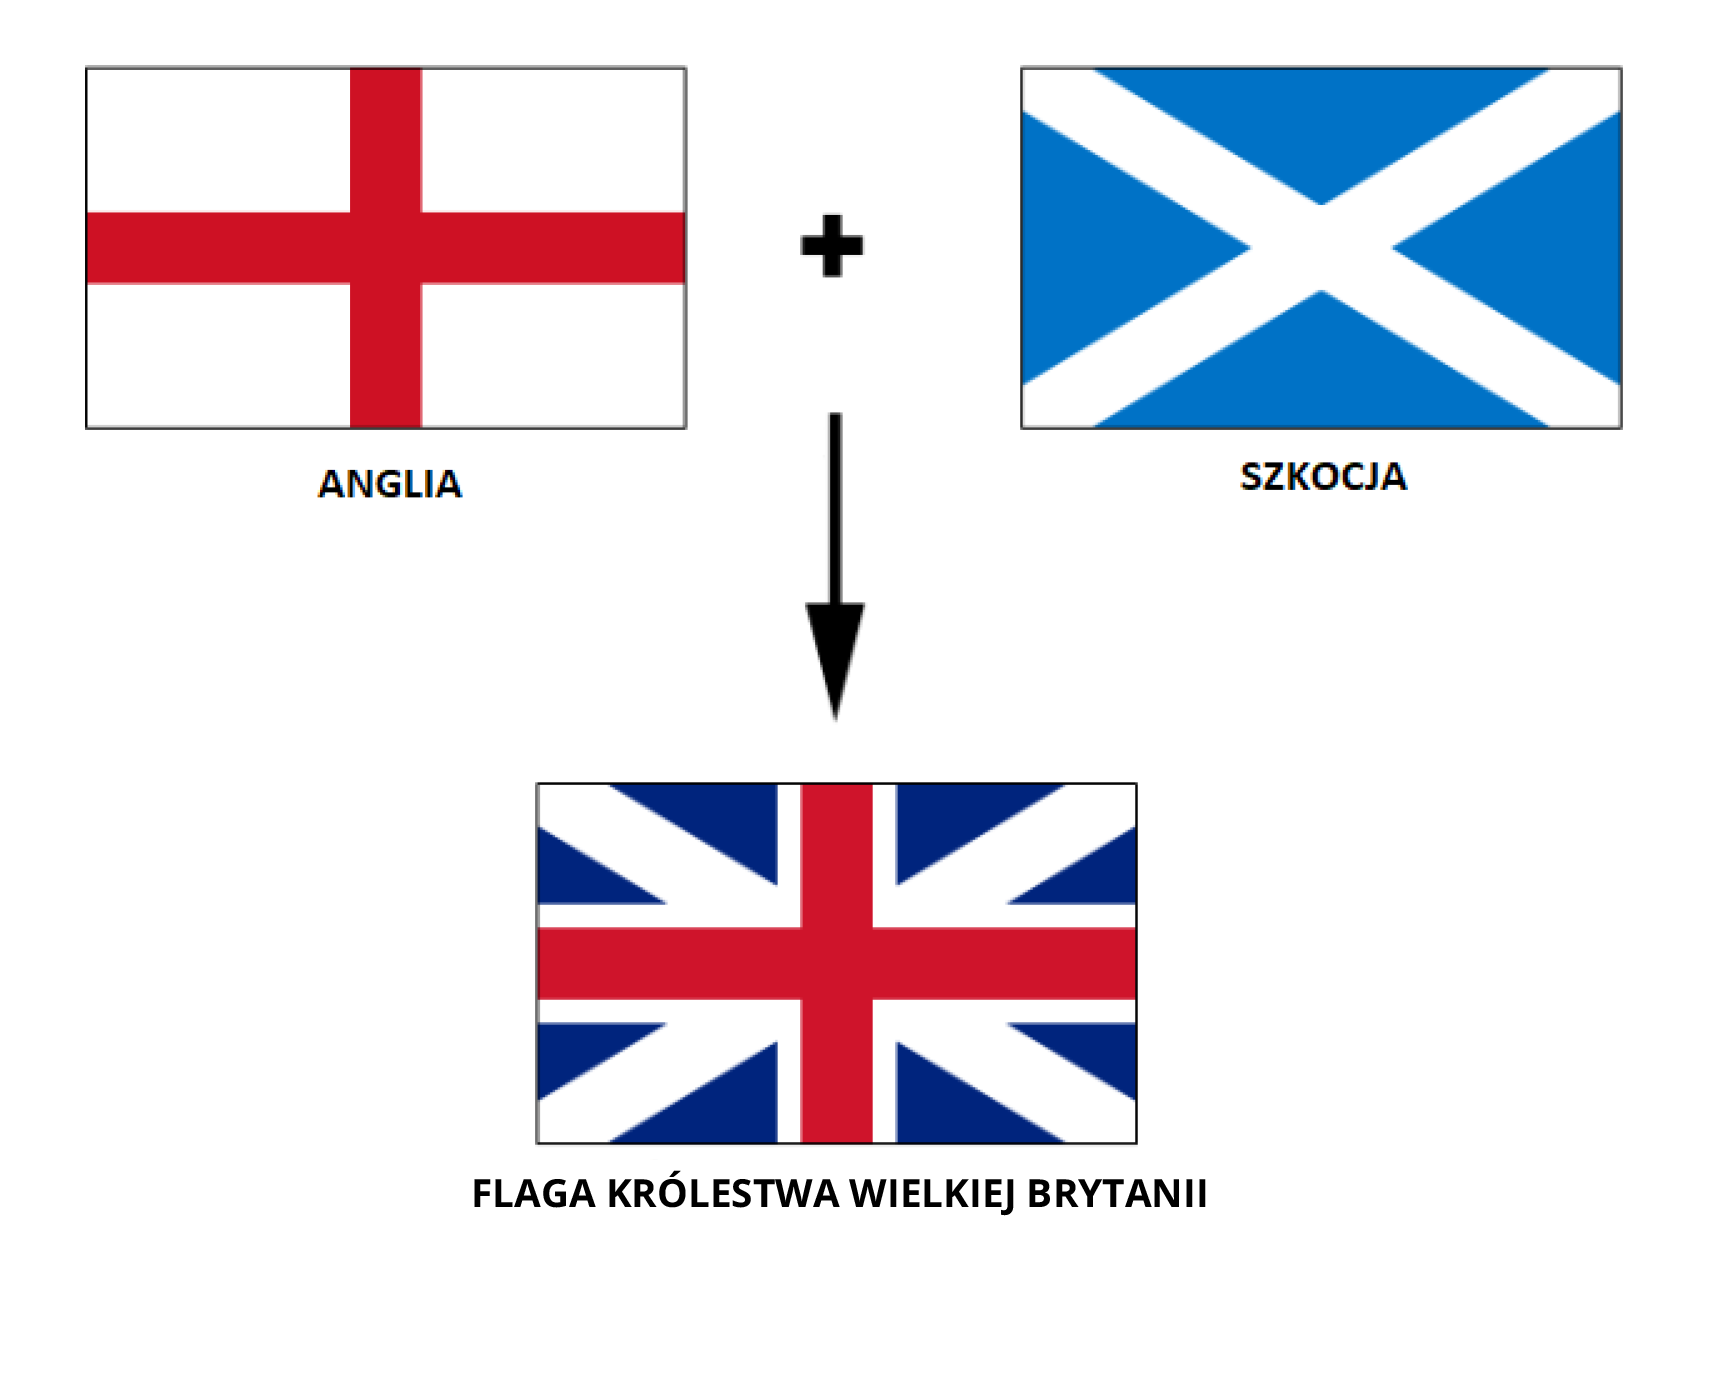 Schemat przedstawia powstanie flagi Królestwa Wielkiej Brytanii. Z flagi Anglii składającej się z czerwonego krzyża przebiegającego przez środek na białym tle oraz flagi Szkocji składającej się z białego krzyża wychodzącego z rogów flagi na niebieskim tle powstała flaga Królestwa Wielkiej Brytanii. Ma ona czerwony krzyż na środku, biały również na środku oraz biały wychodzący z rogów. Tło jest ciemnoniebieskie. 